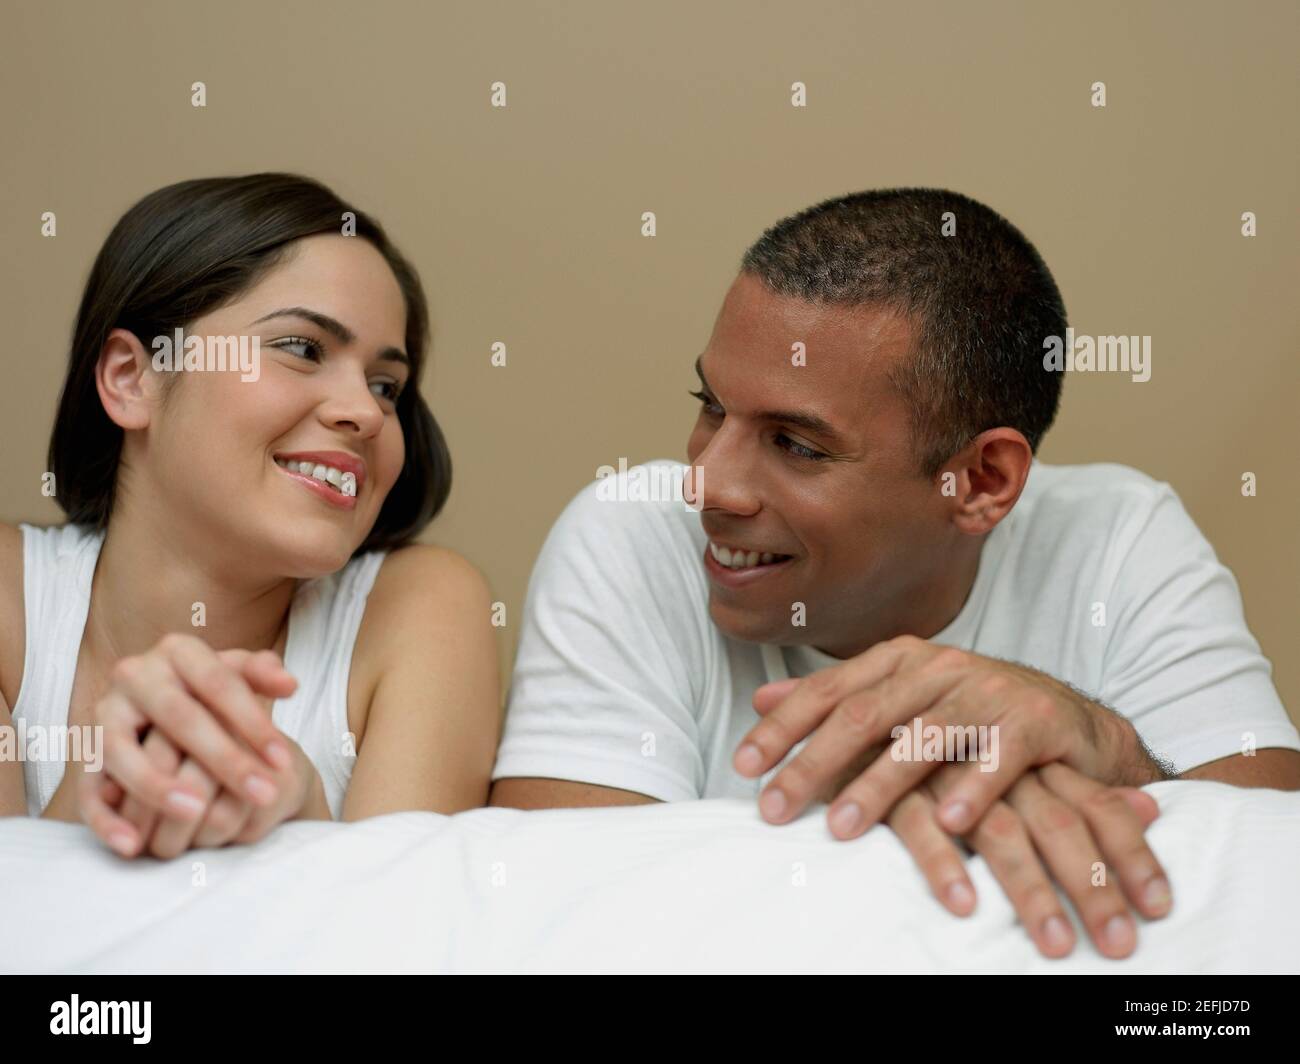 Nahaufnahme einer jungen Frau und eines mittleren Erwachsenen Einander anschauend und lächelnd Stockfoto